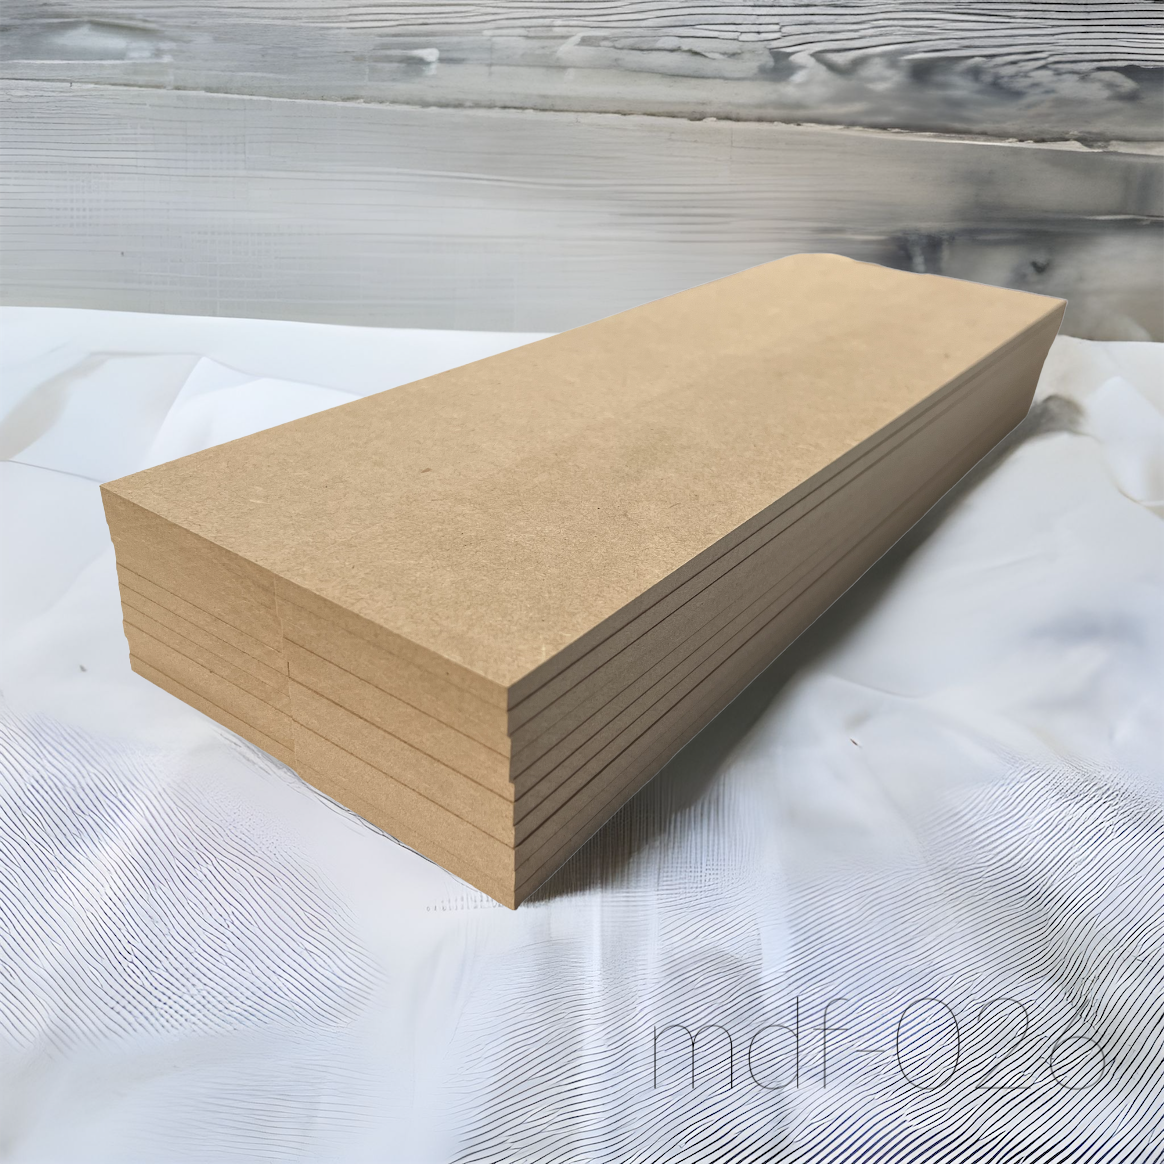 木材 MDF材 15mm厚 900mm×1800mm (3×6・サブロク) 1枚 MDFボード MDF板 直線カットオーダー対応(10回無料) 板 diy 材料 (事業所向け) - 3